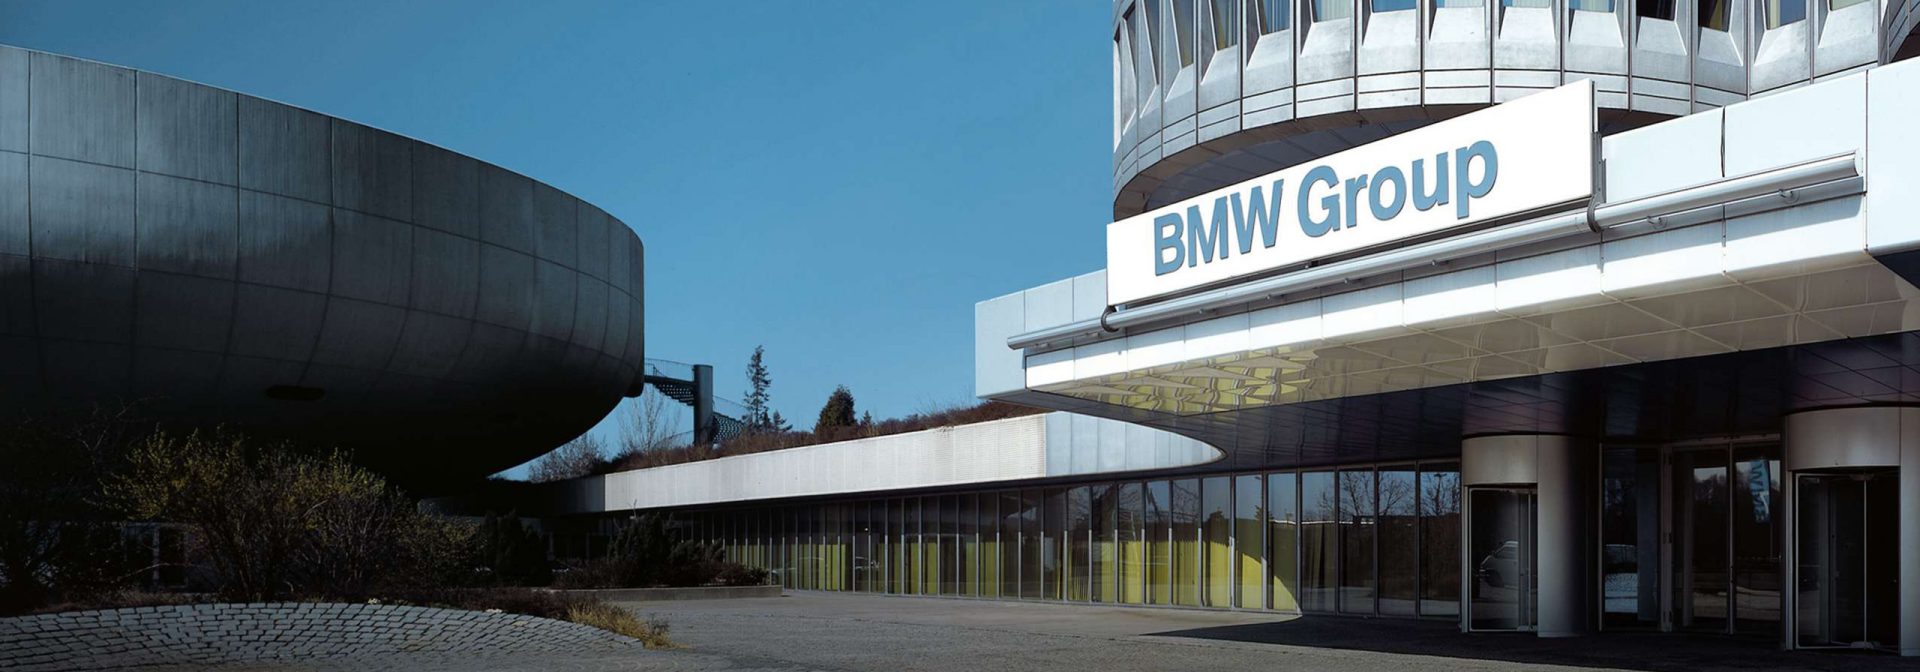 Die BMW Group richtet sich neu aus.